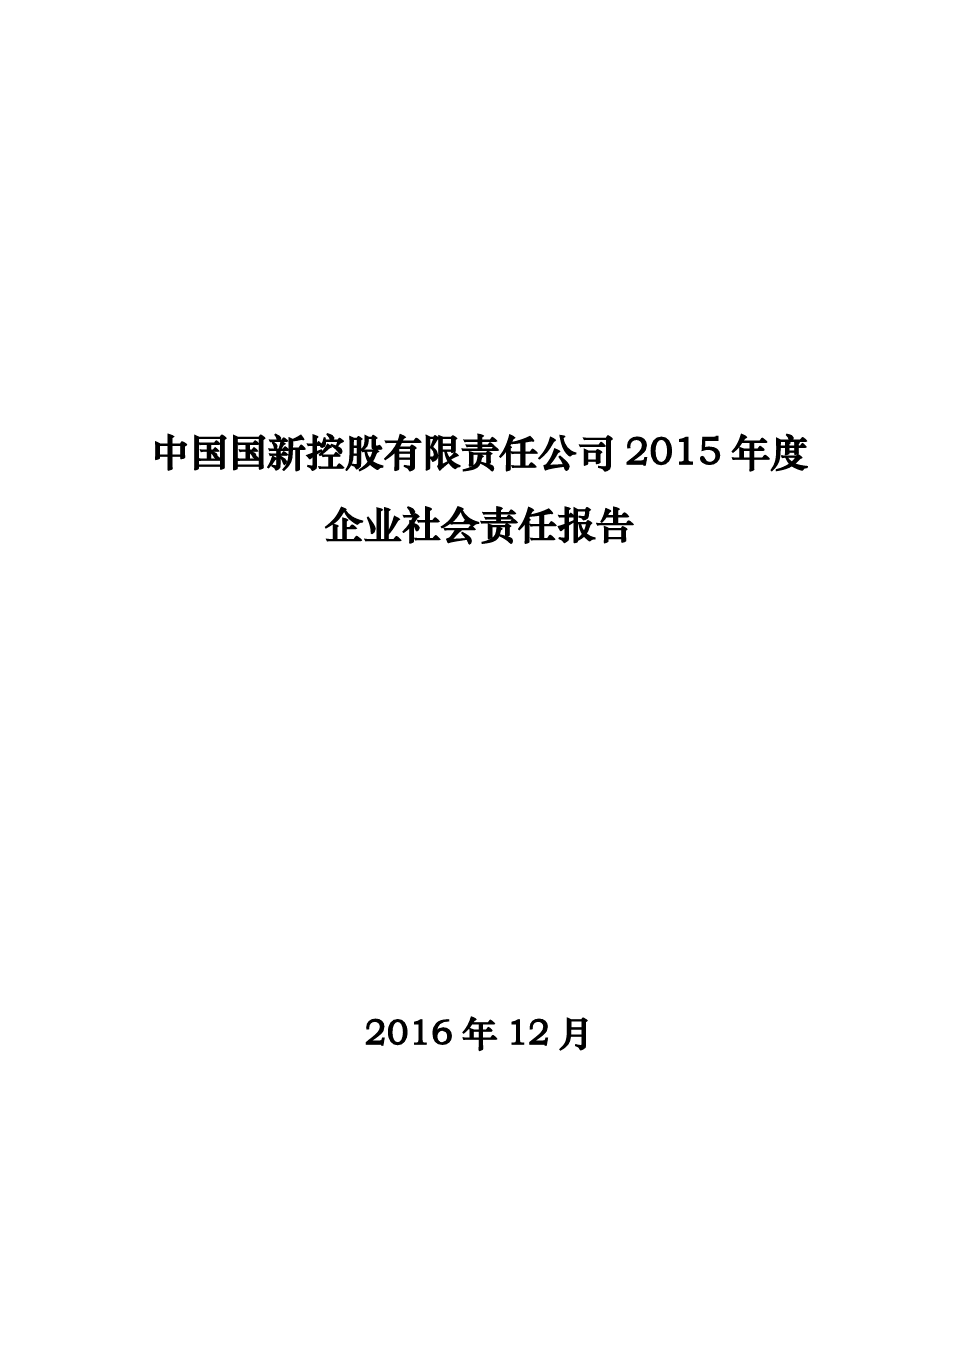 中国国新控股有限责任公司2015年度企业社会责任报告